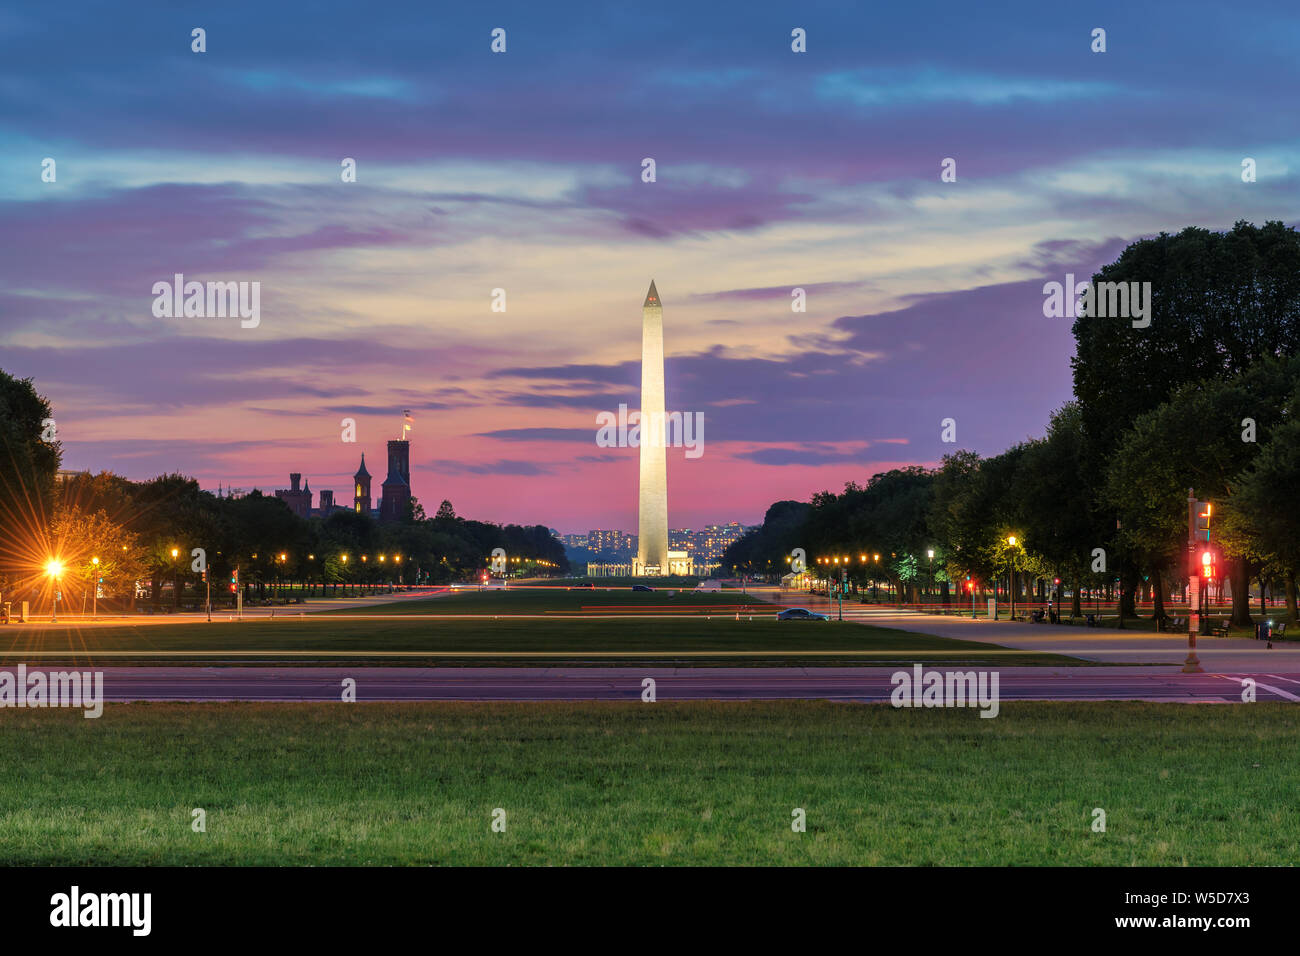 Washington Monument  illuminated at sunset, Washington DC Stock Photo